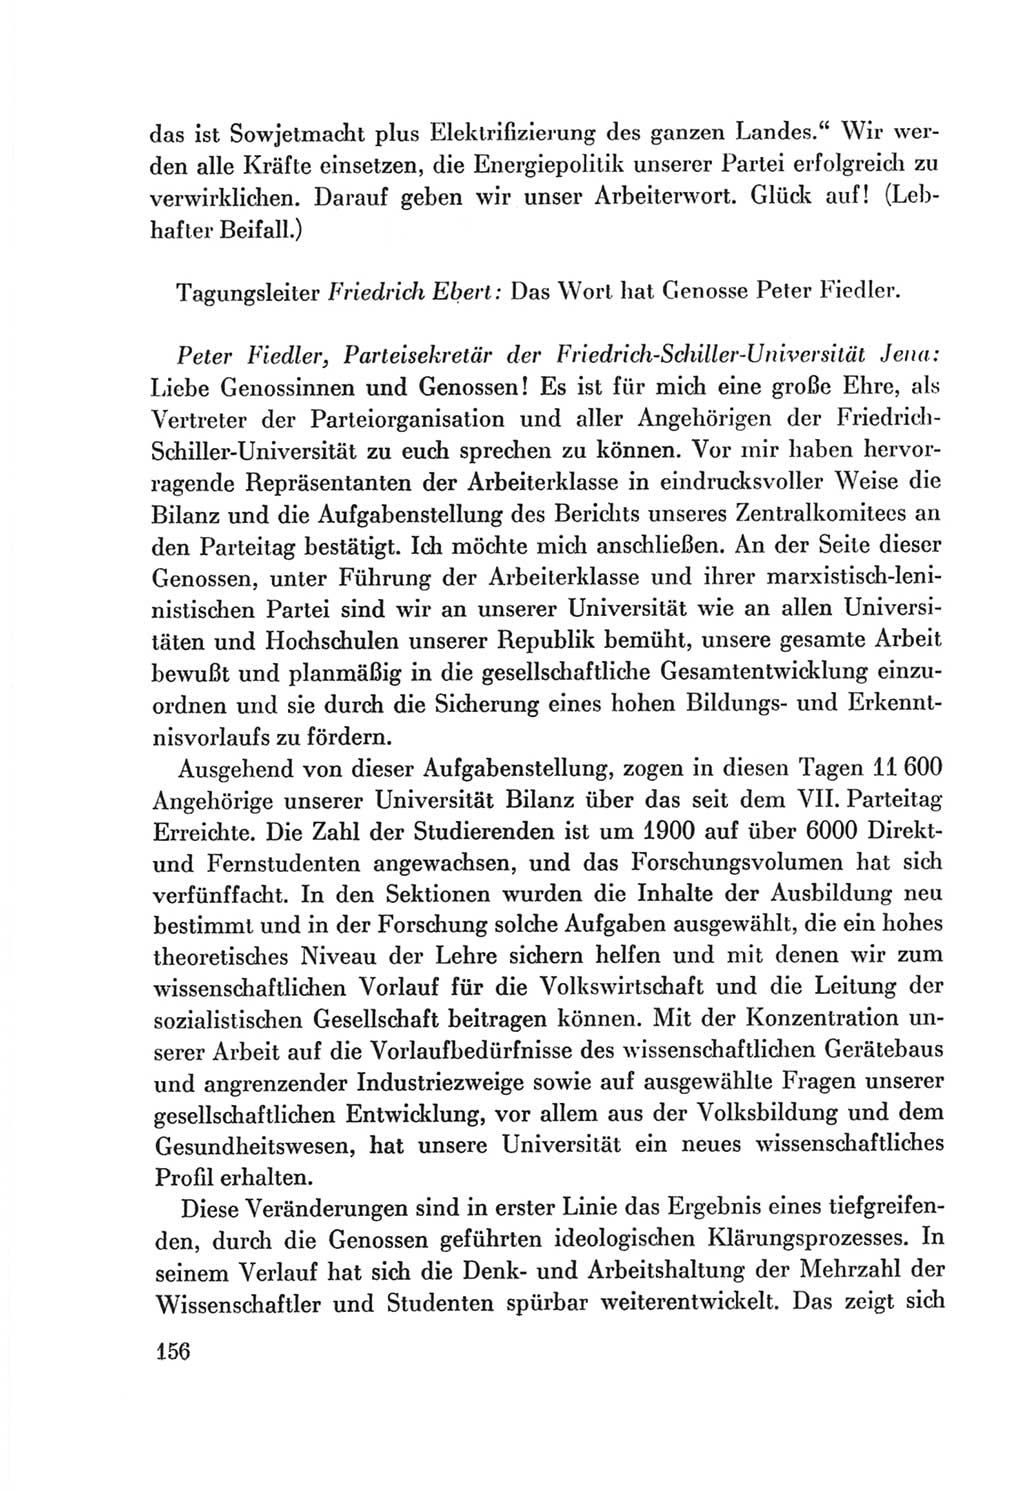 Protokoll der Verhandlungen des Ⅷ. Parteitages der Sozialistischen Einheitspartei Deutschlands (SED) [Deutsche Demokratische Republik (DDR)] 1971, Band 1, Seite 156 (Prot. Verh. Ⅷ. PT SED DDR 1971, Bd. 1, S. 156)